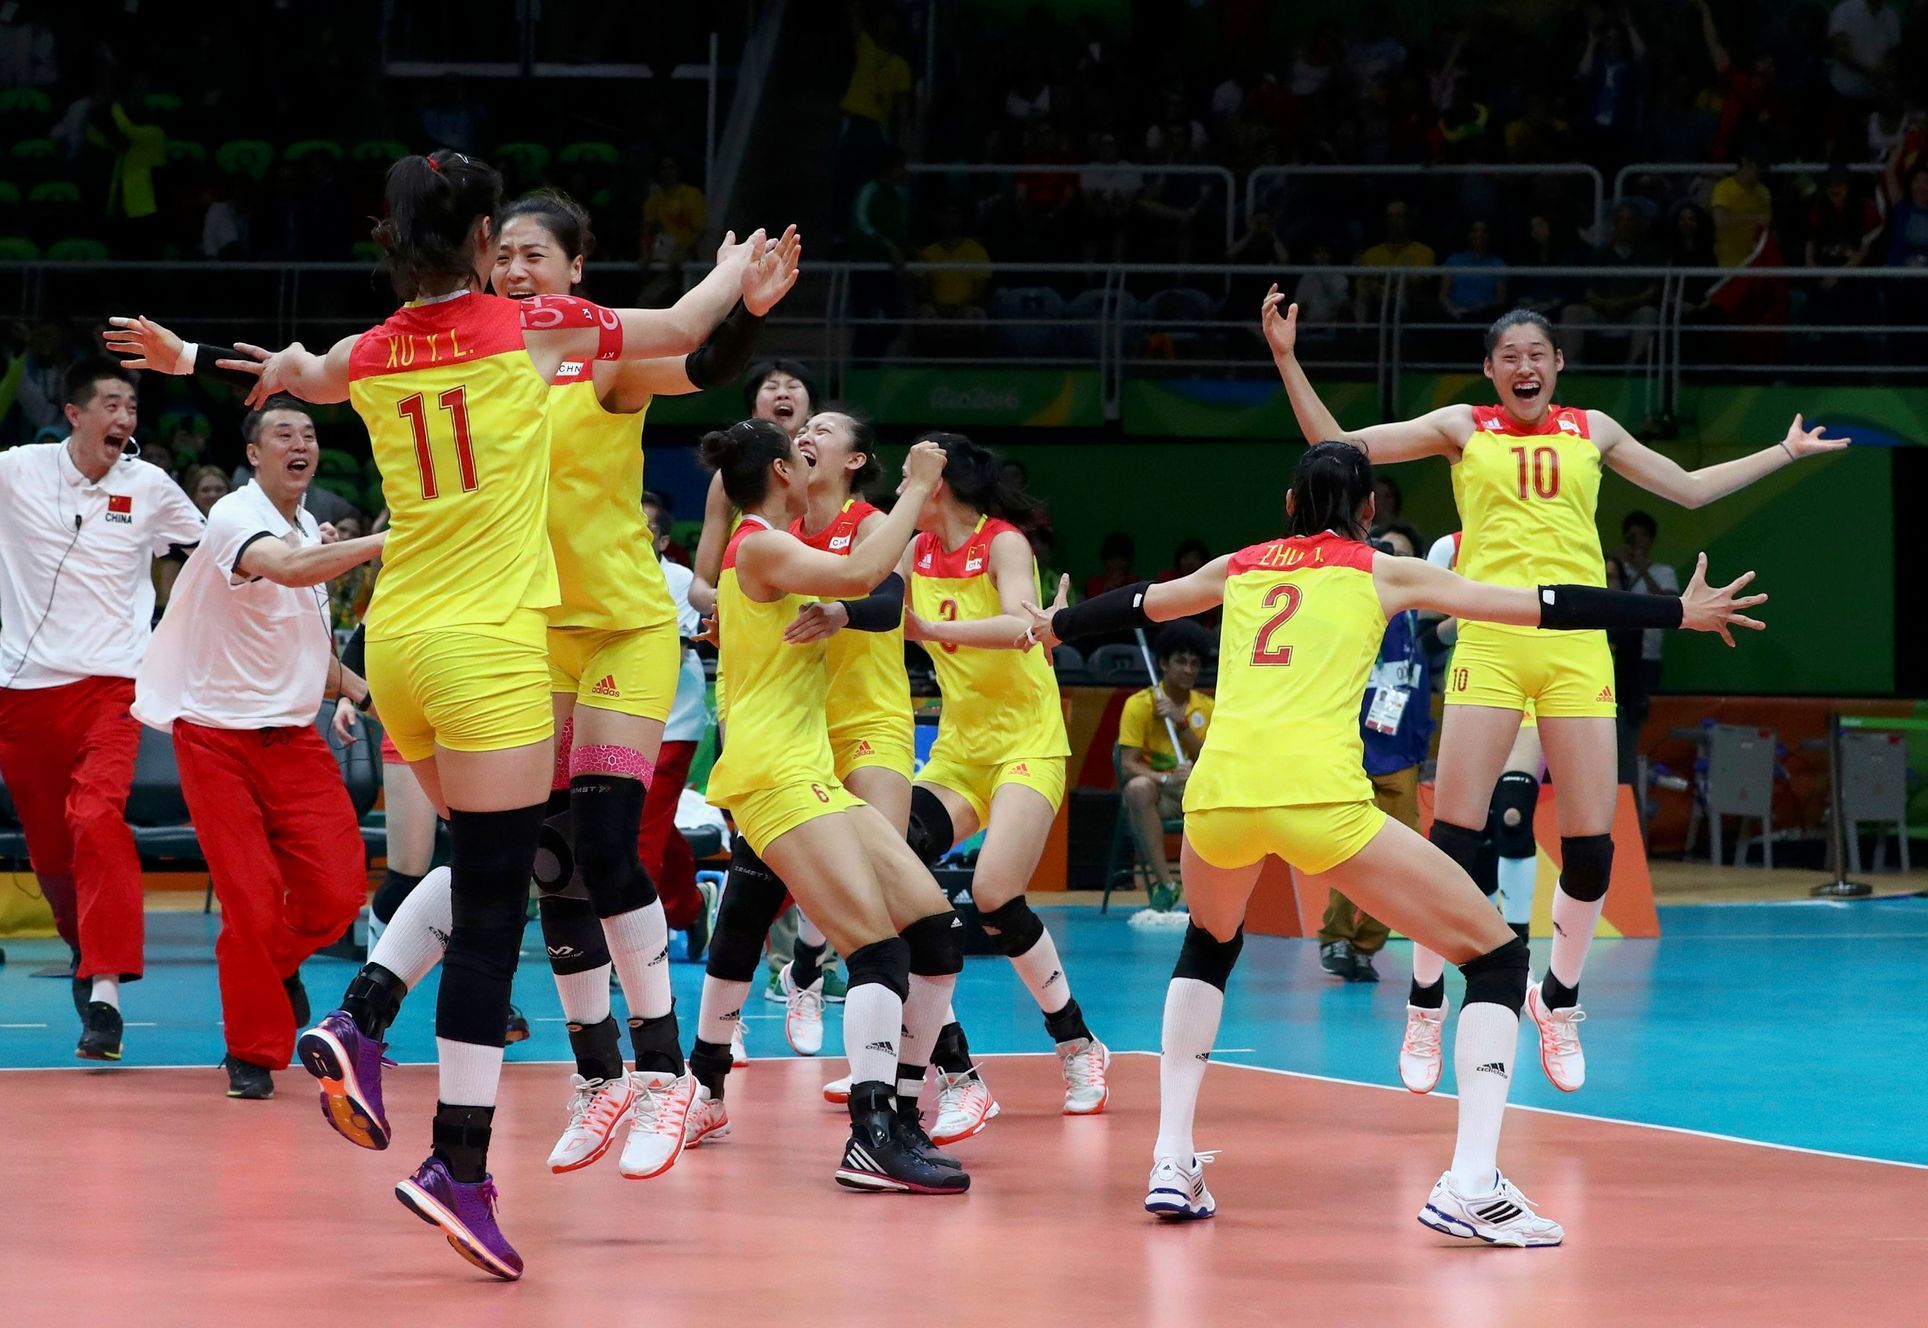 OH Rio 2016: Čínské volejbalistky slaví olympijské zlato